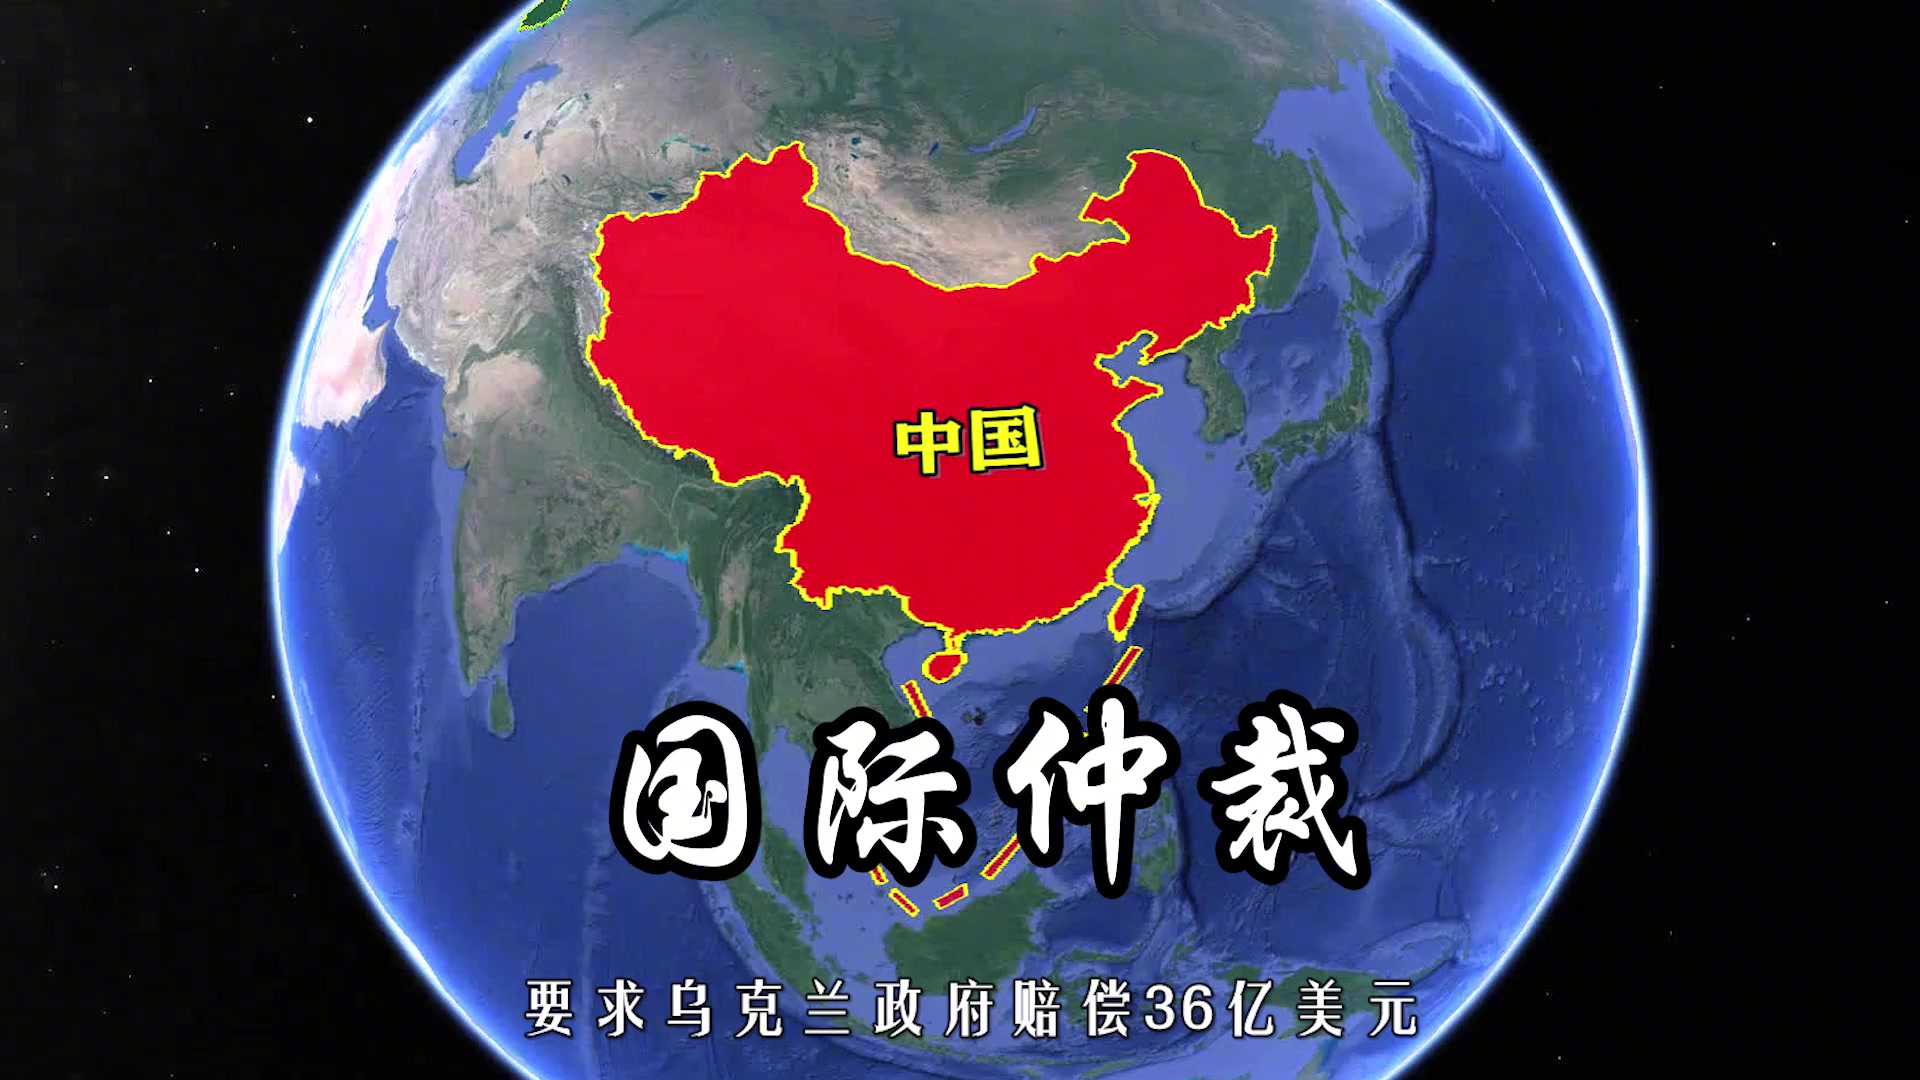 乌克兰与中国位置图片